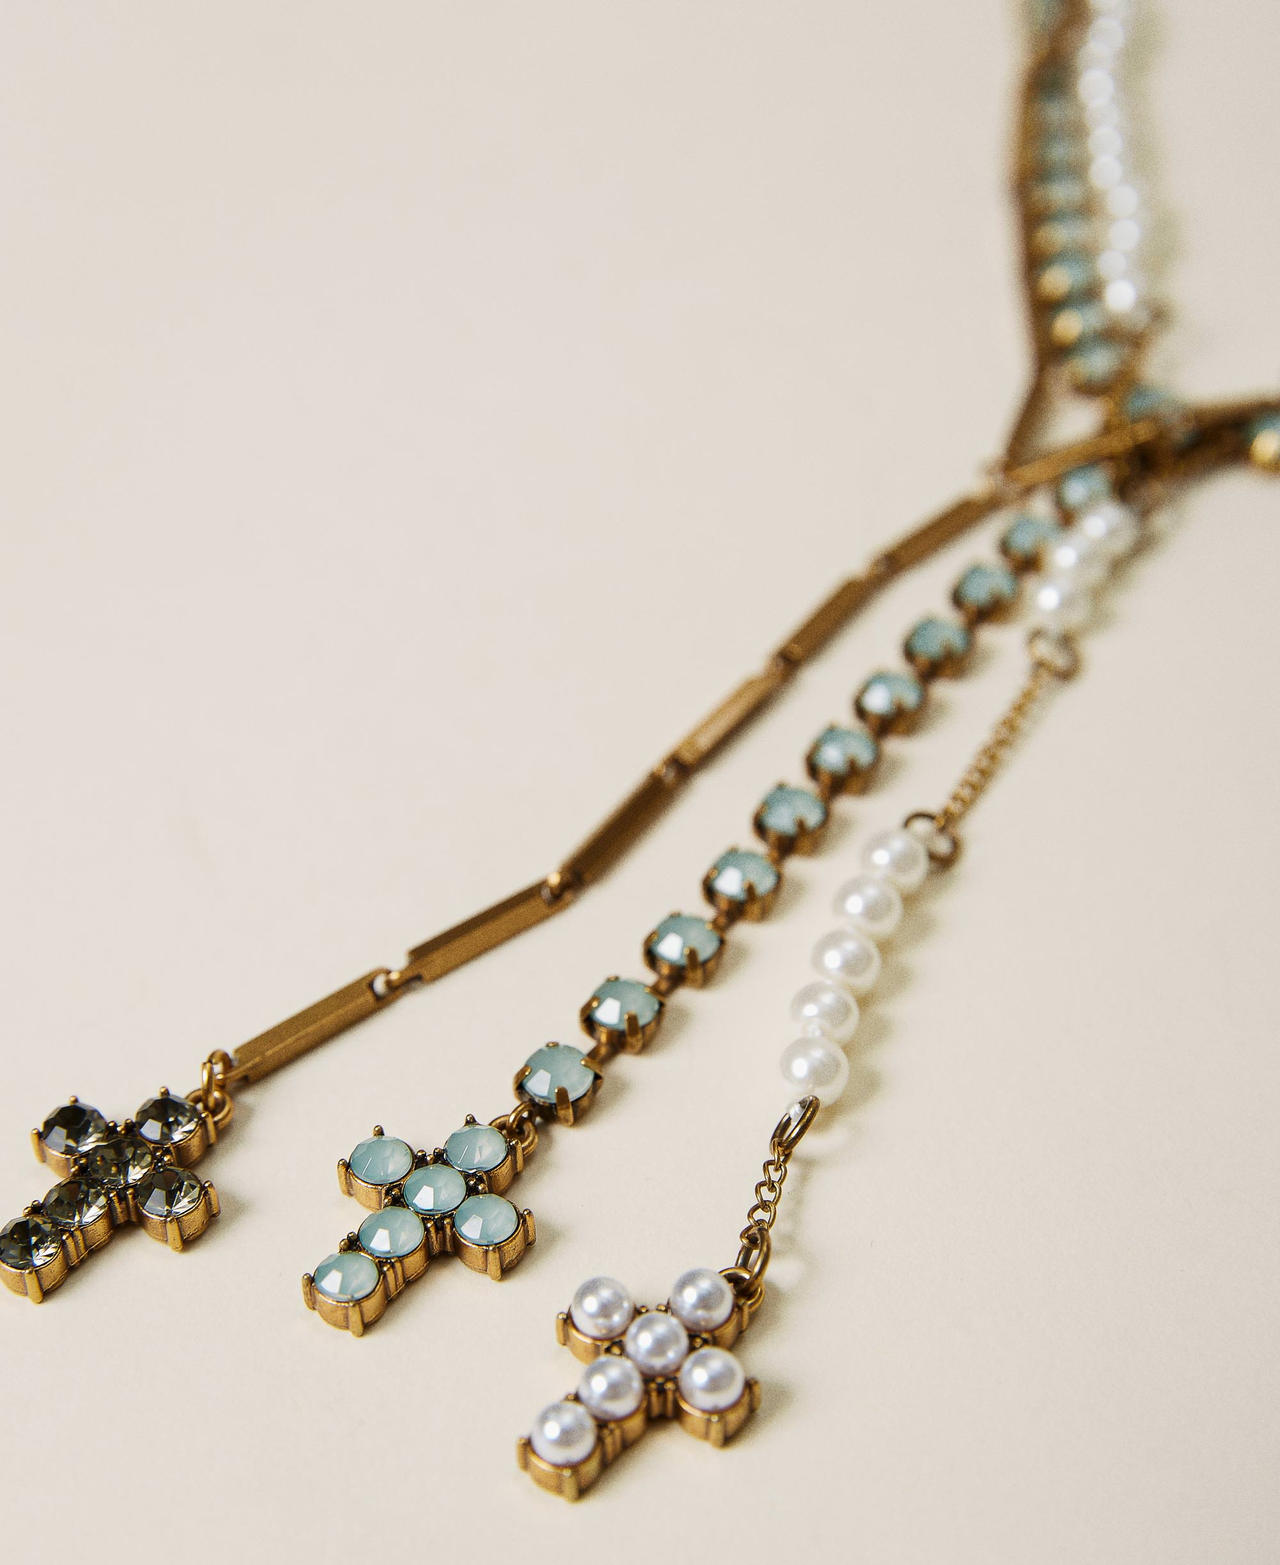 Parure de colliers avec pierres, strass et perles Multicolore Vert « Lichen » »/Or « Laiton Vieilli Cuivré » Femme 221TA4044-02